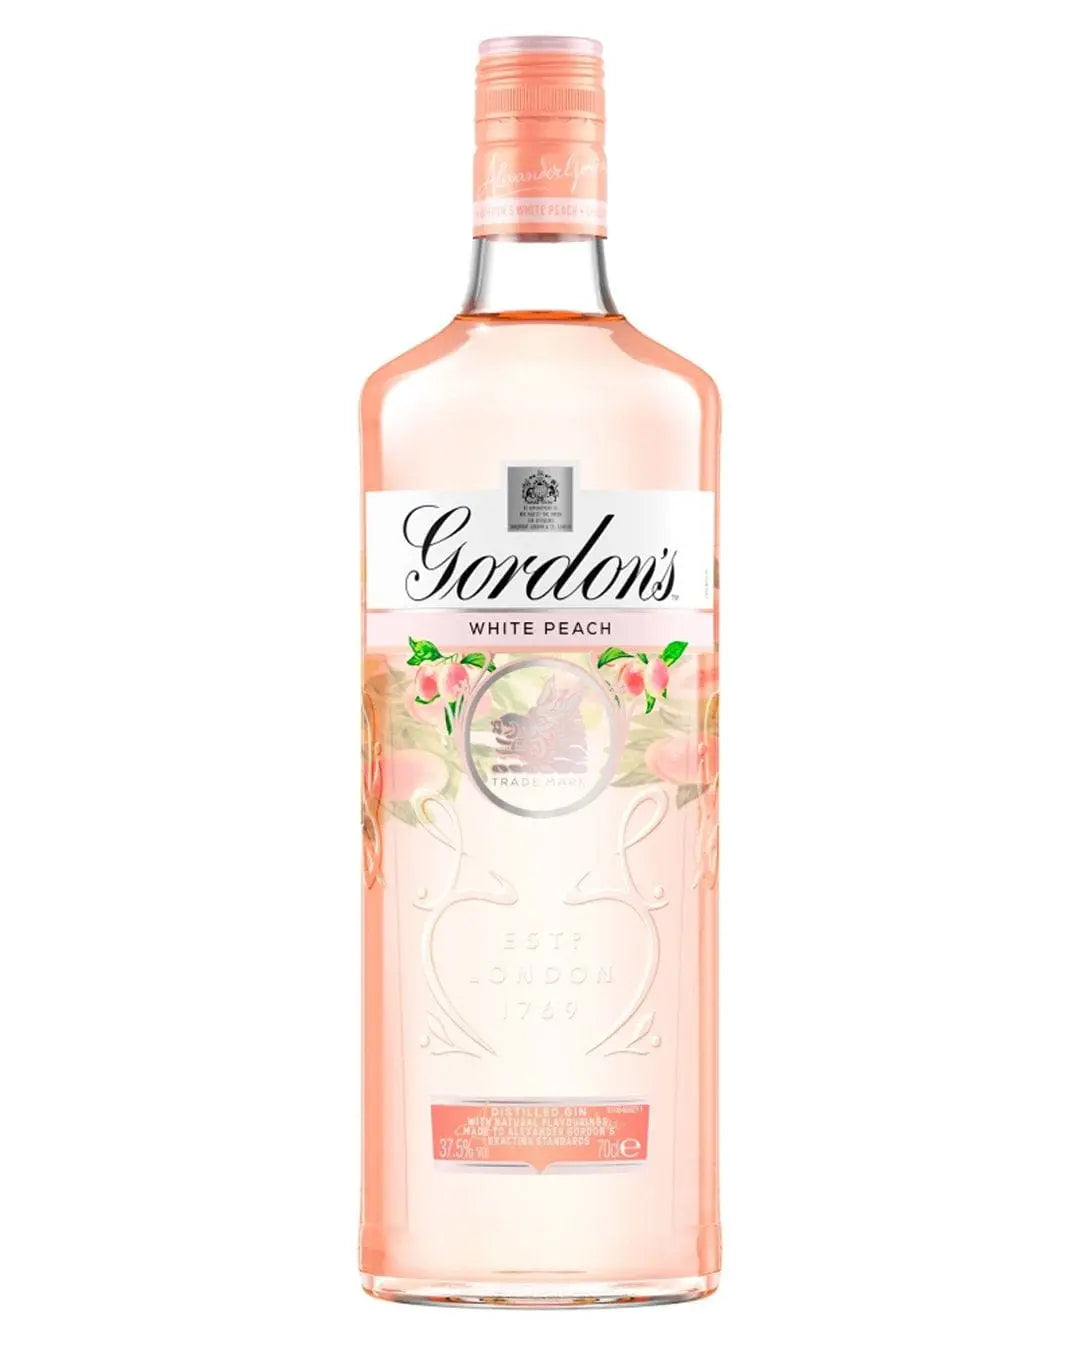 Gordon's White Peach Distilled Gin, 70 cl Gin 5000289932417